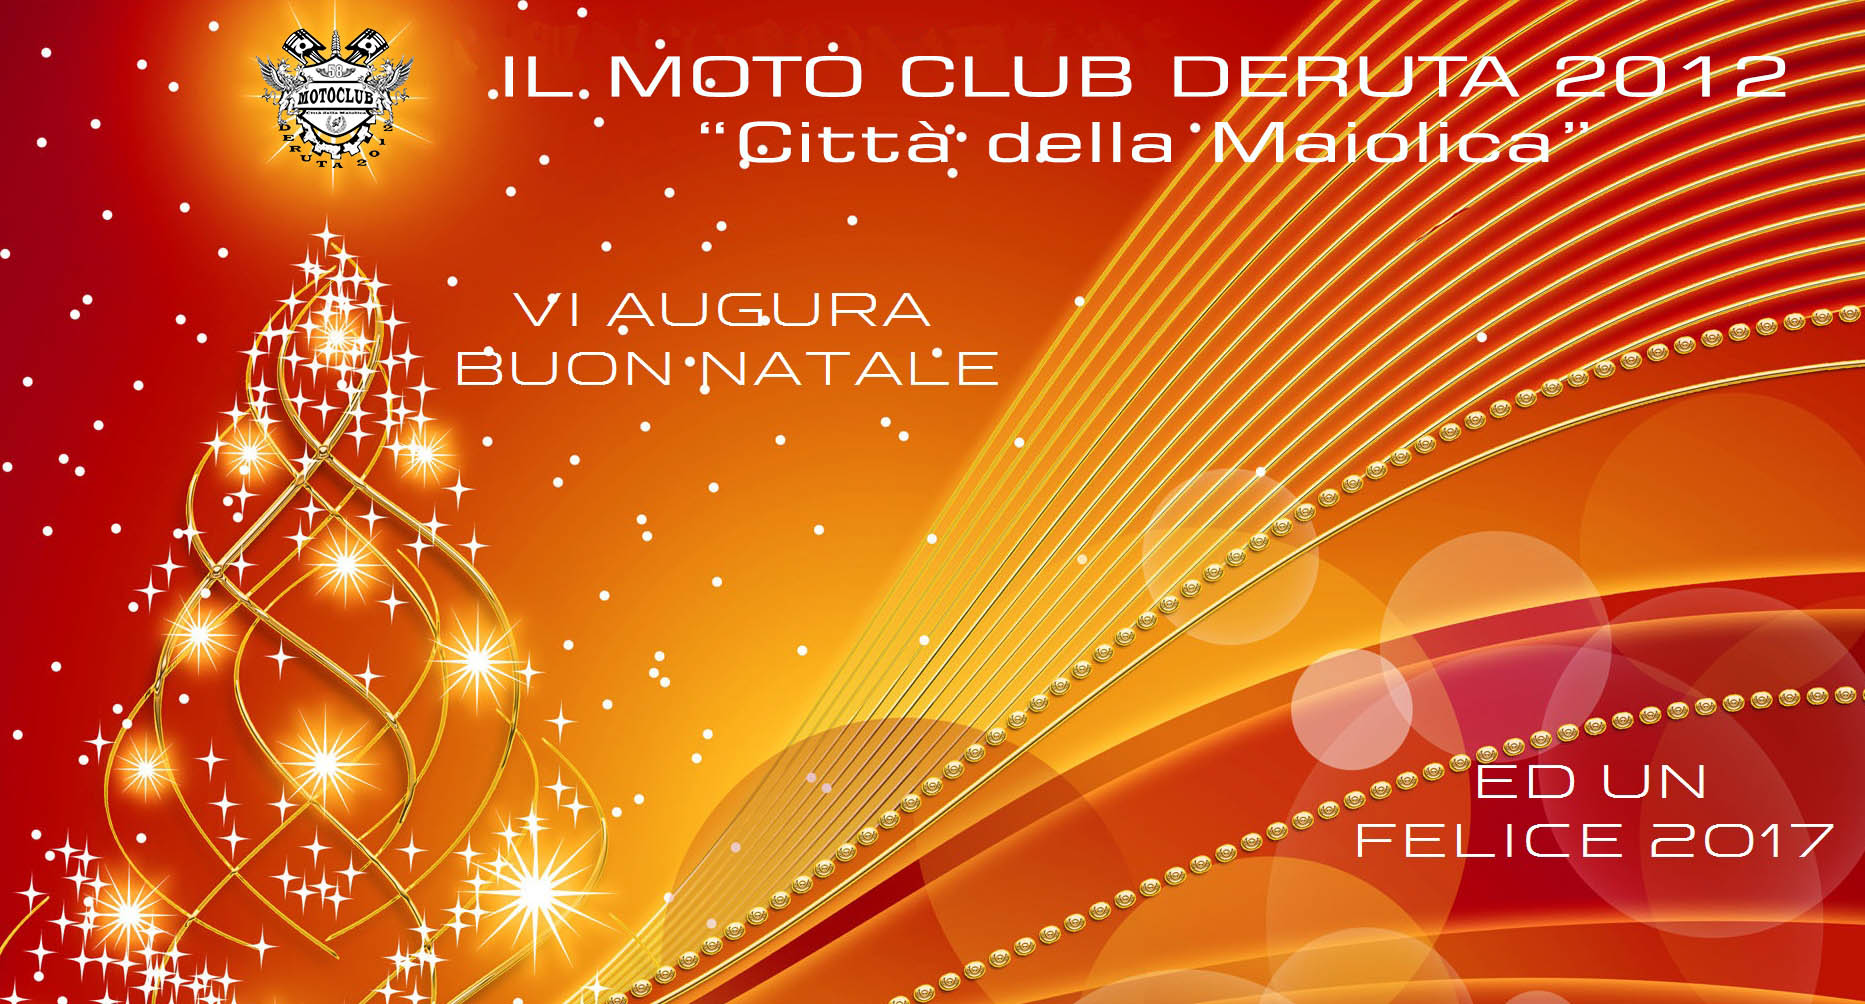 Il Moto Club Deruta 2012 “Città della Maiolica” augura a tutti i soci ed amici …..Buone Feste!!!!!